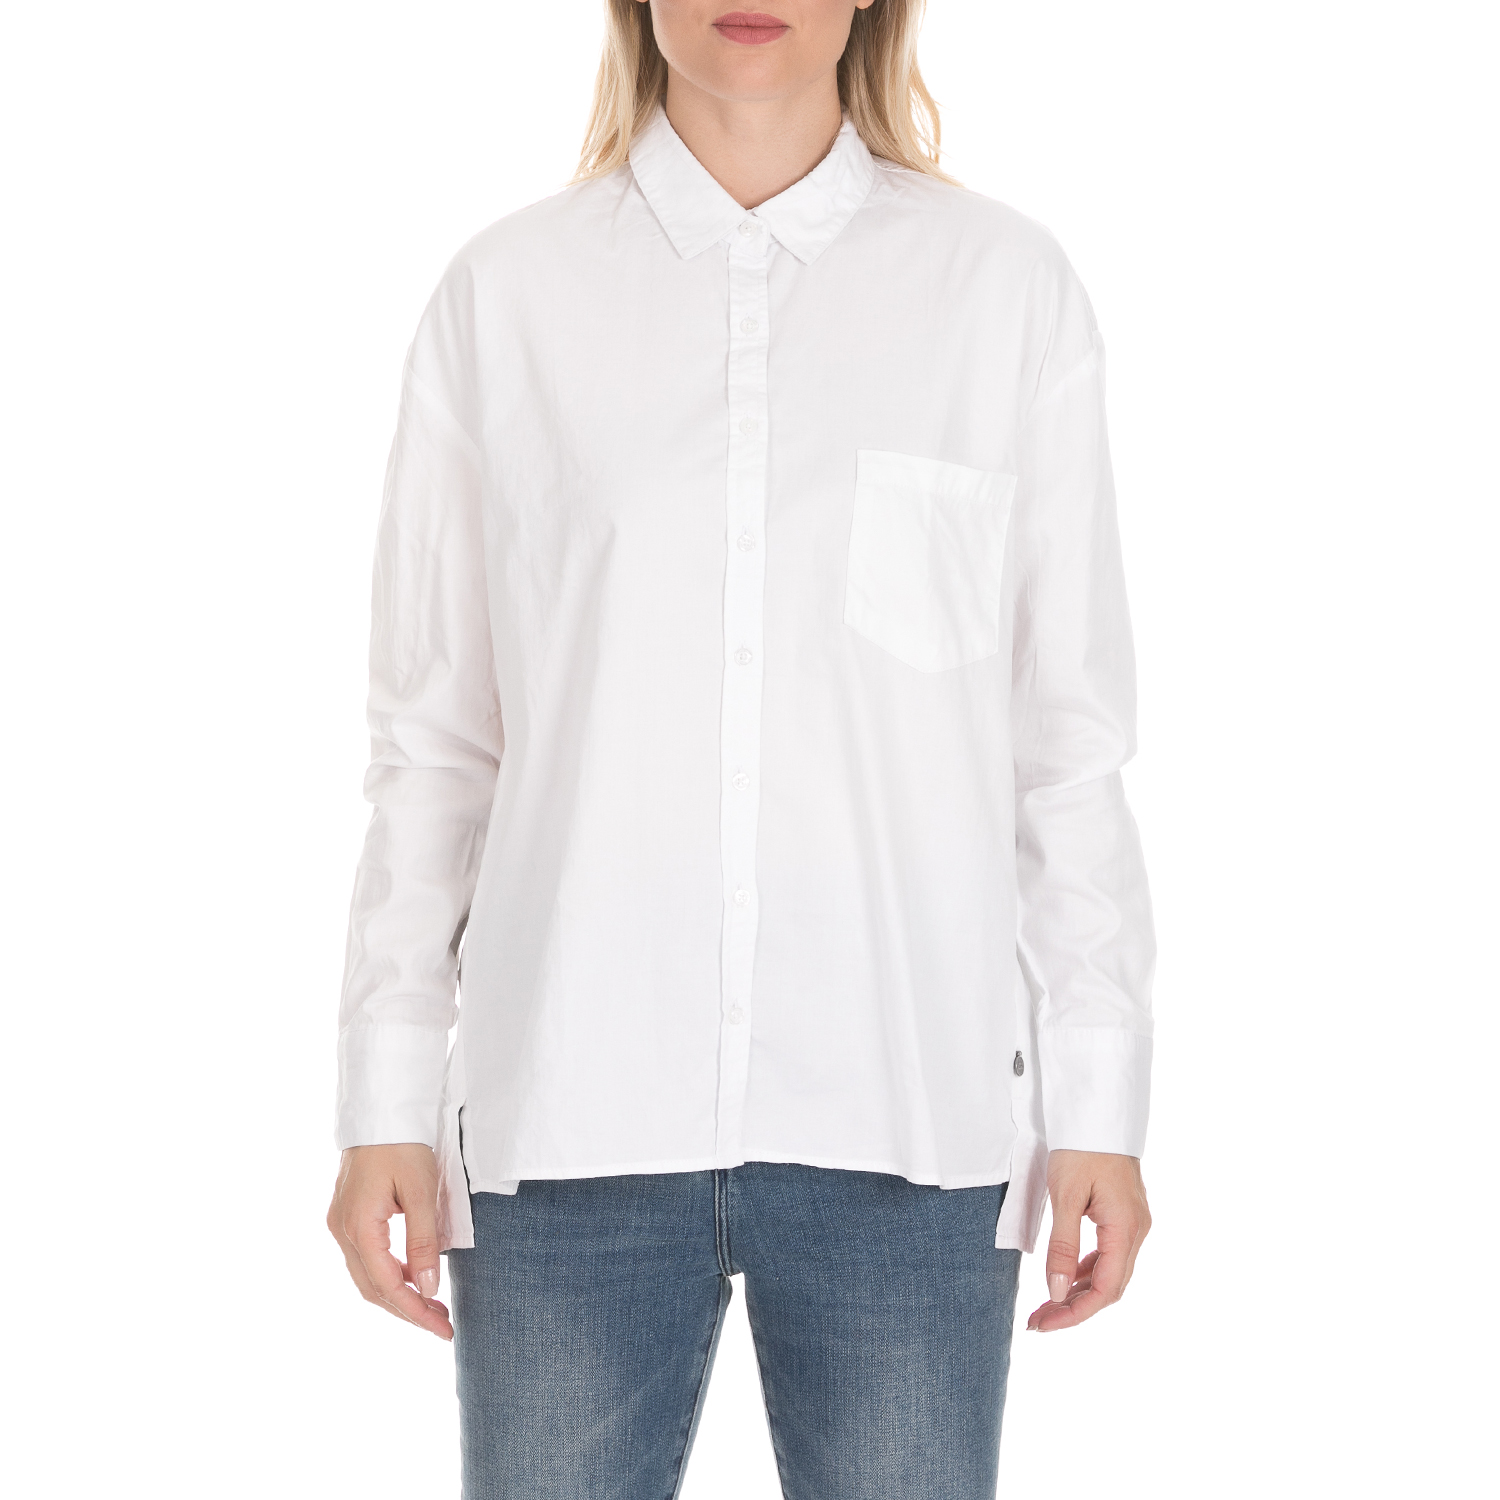 Γυναικεία/Ρούχα/Πουκάμισα/Μακρυμάνικα FUNKY BUDDHA - Γυναικείο πουκάμισο FUNKY BUDDHA λευκό